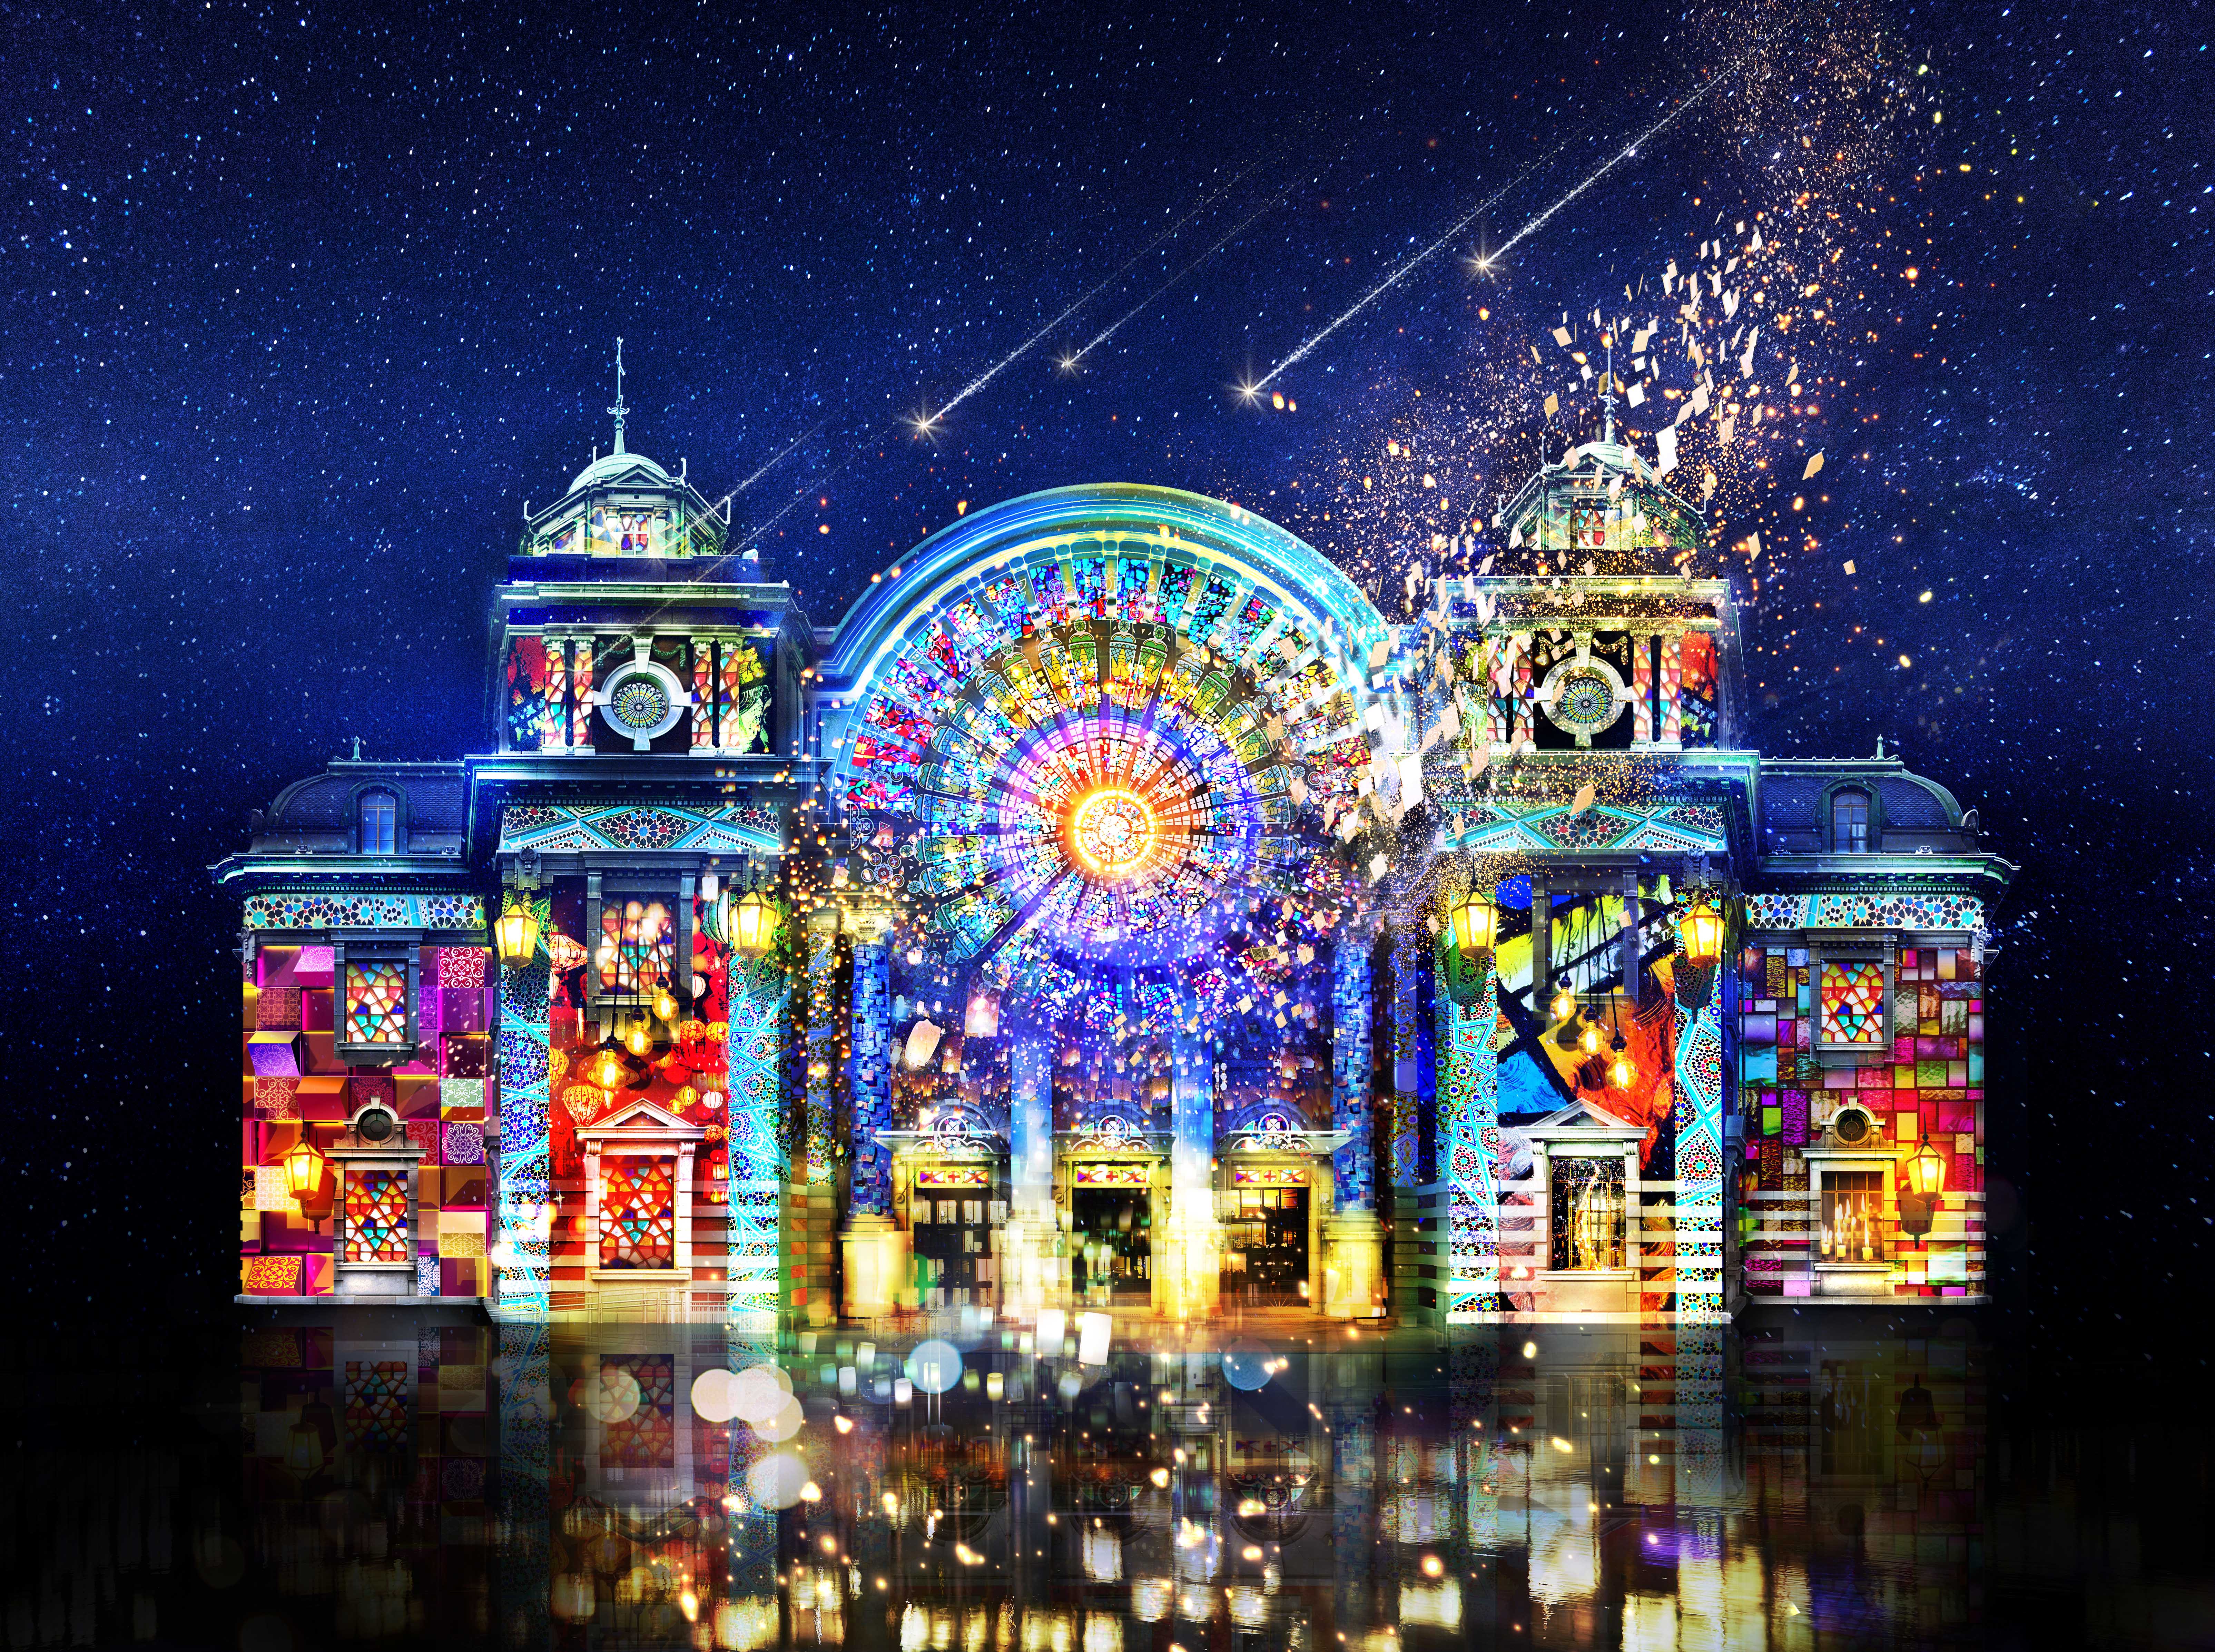 Osaka光のルネサンス 中央公会堂プロジェクションマッピング 再び 株式会社ネイキッドのプレスリリース